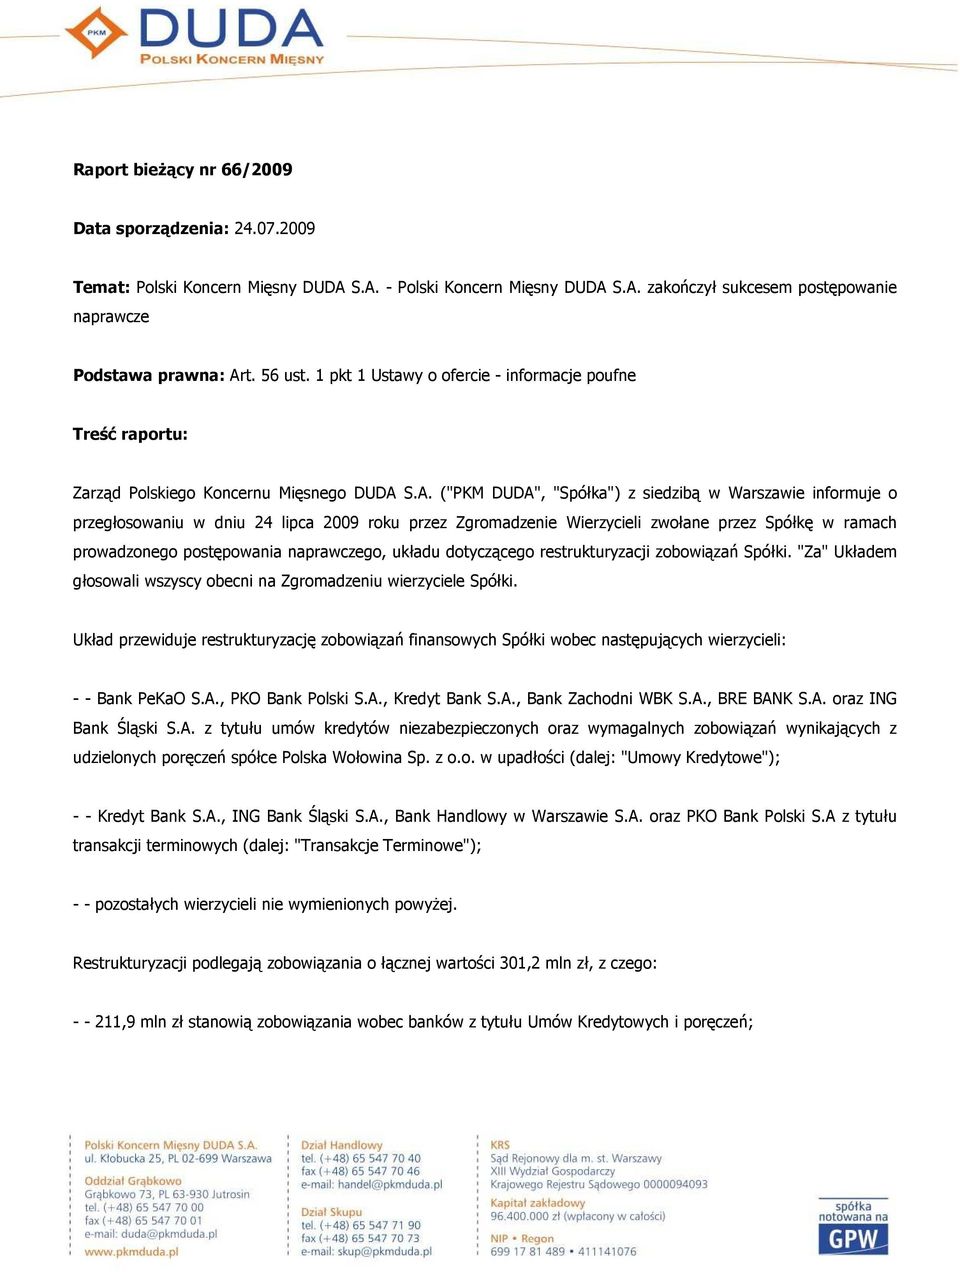 S.A. ("PKM DUDA", "Spółka") z siedzibą w Warszawie informuje o przegłosowaniu w dniu 24 lipca 2009 roku przez Zgromadzenie Wierzycieli zwołane przez Spółkę w ramach prowadzonego postępowania